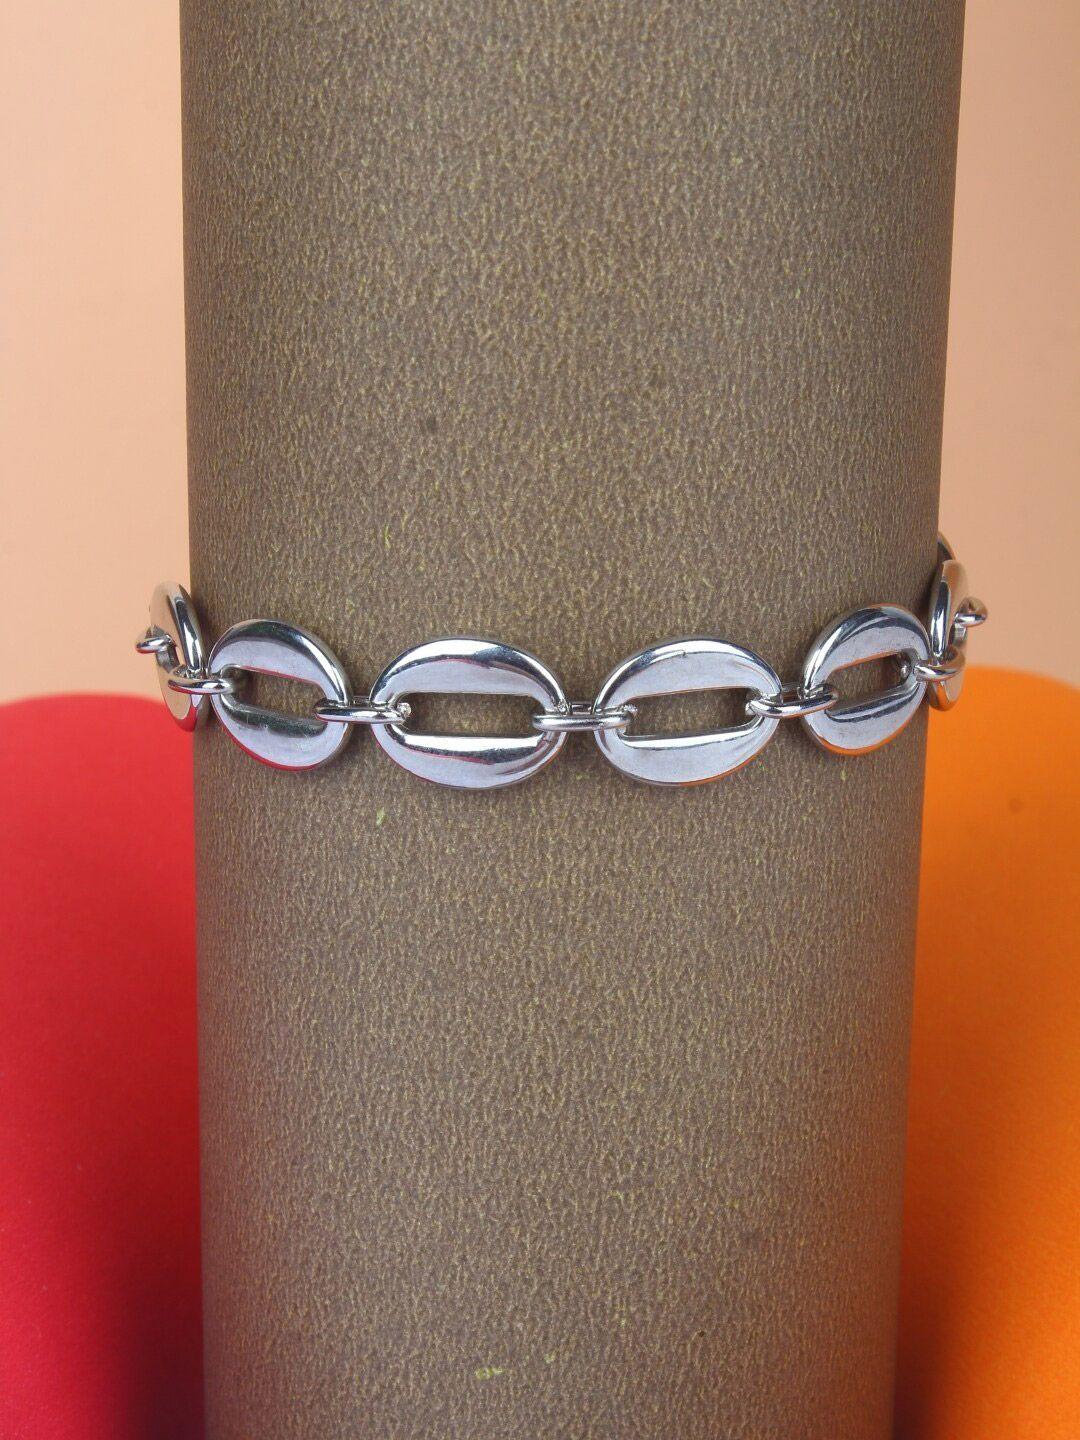 stylecast x kpop brass silver-plated charm bracelet